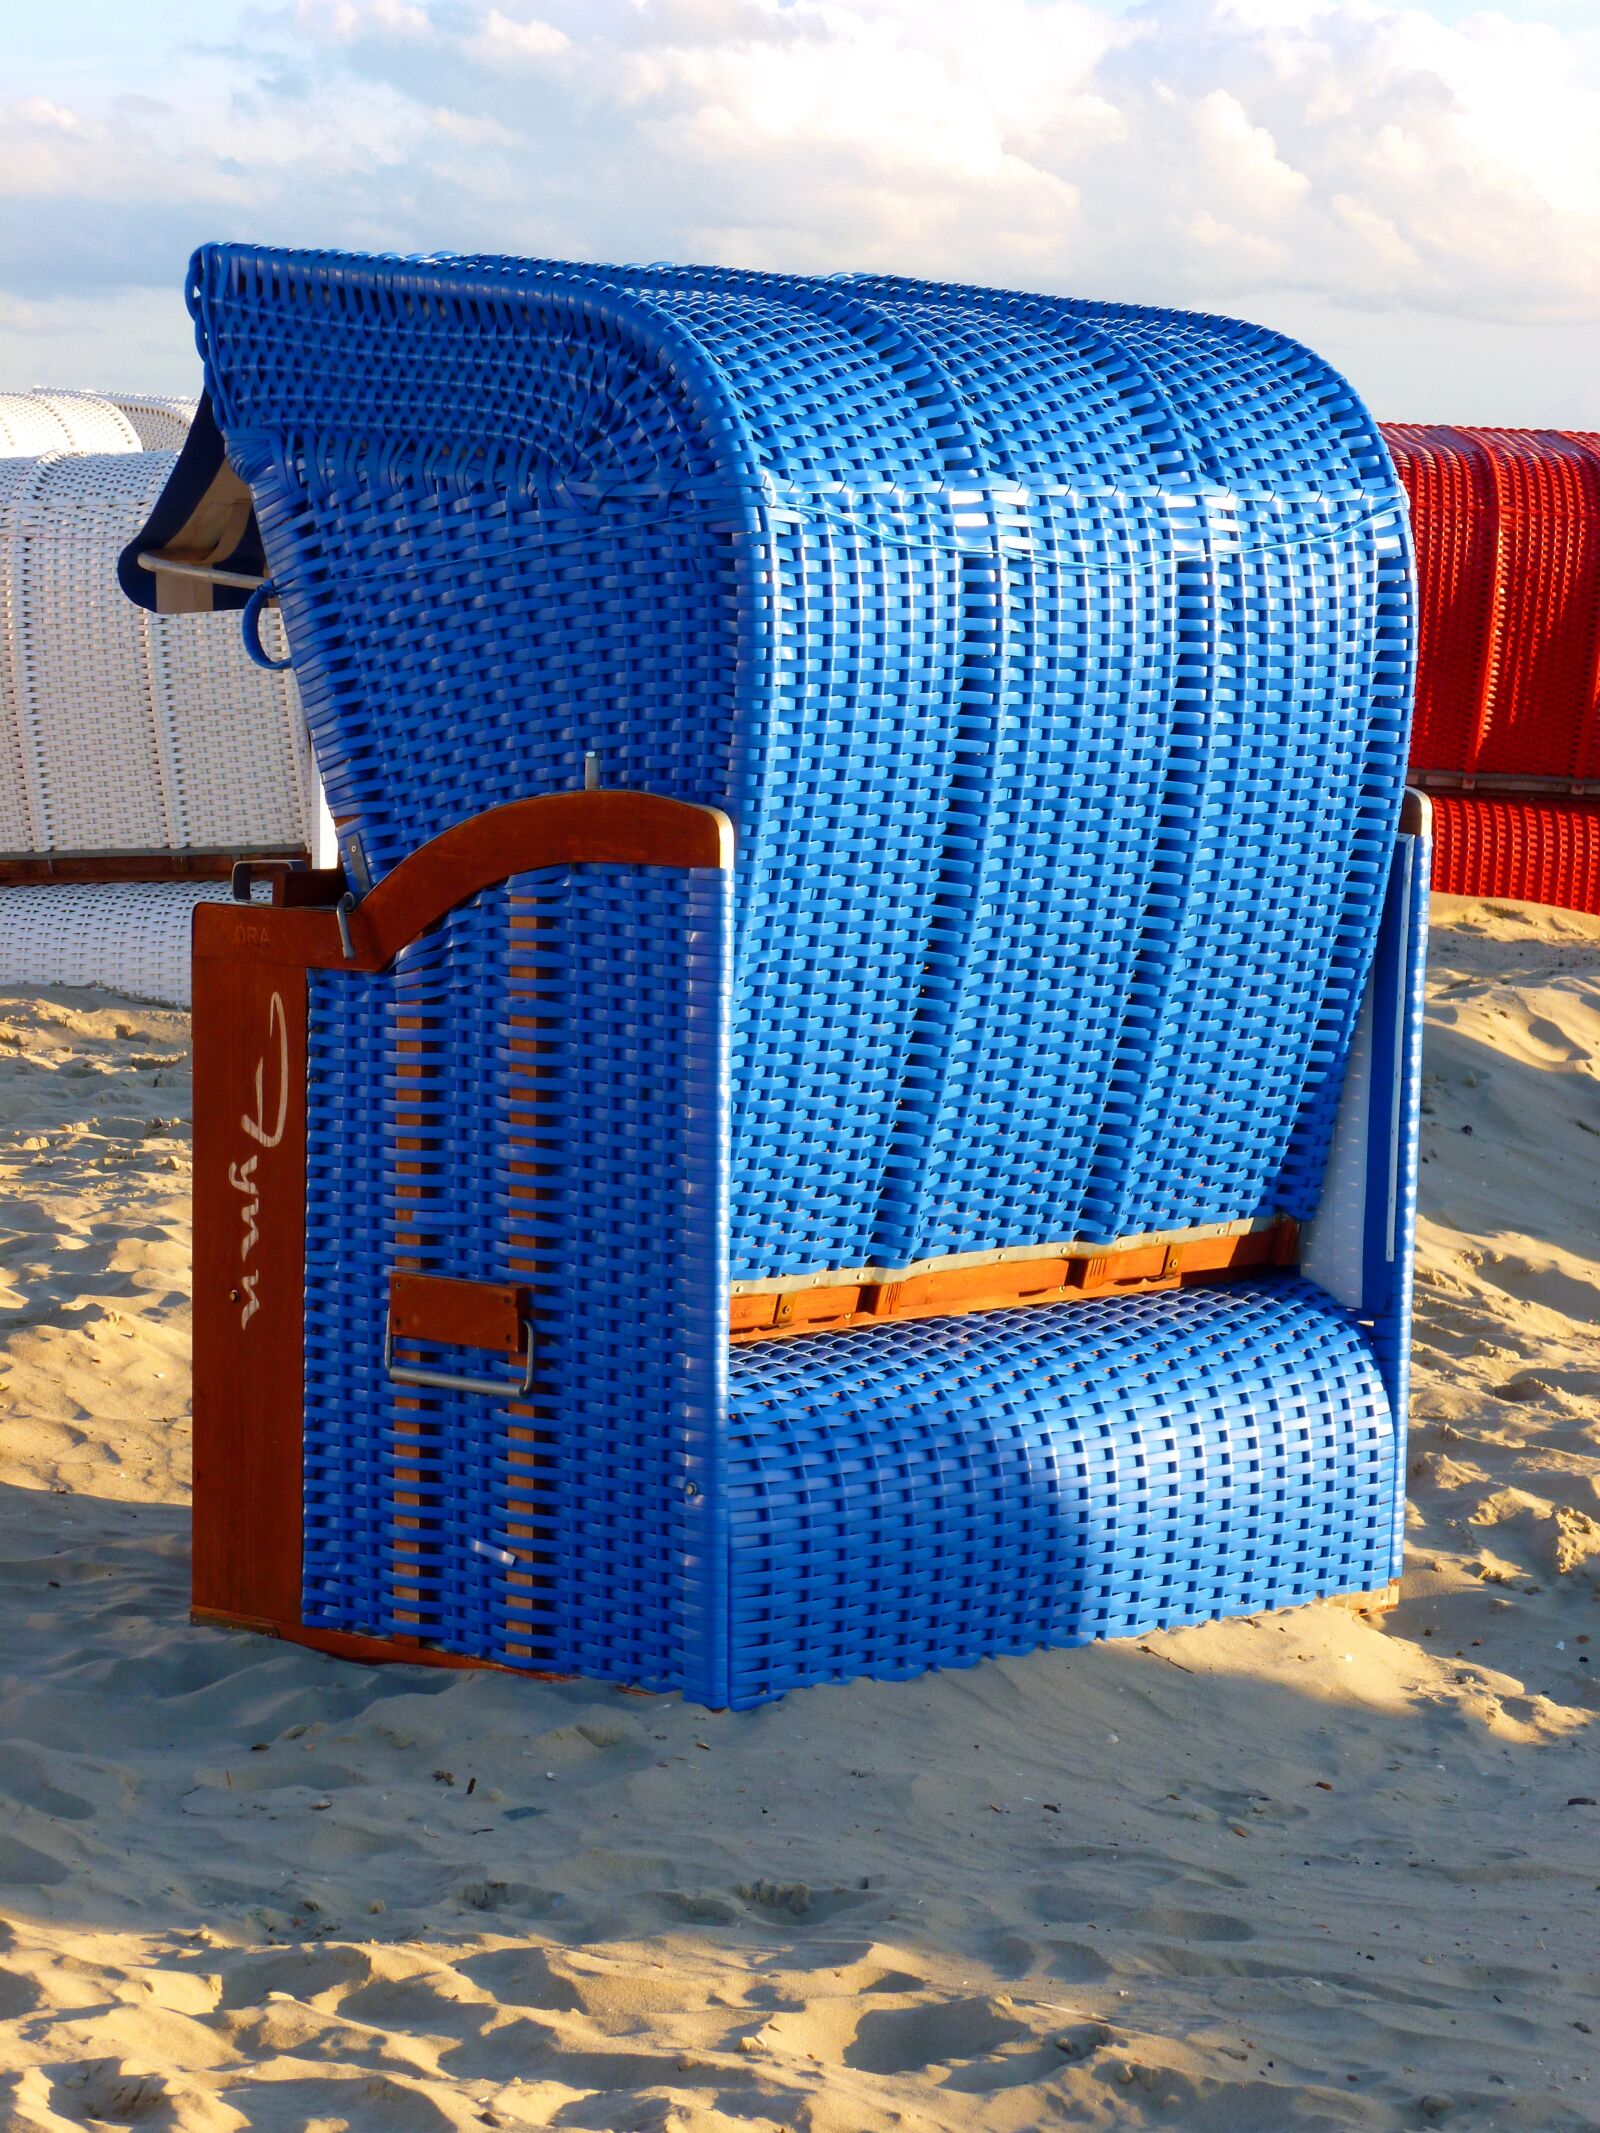 Panasonic DMC-FS37 sample photo. Beach chair, beach, sand photography